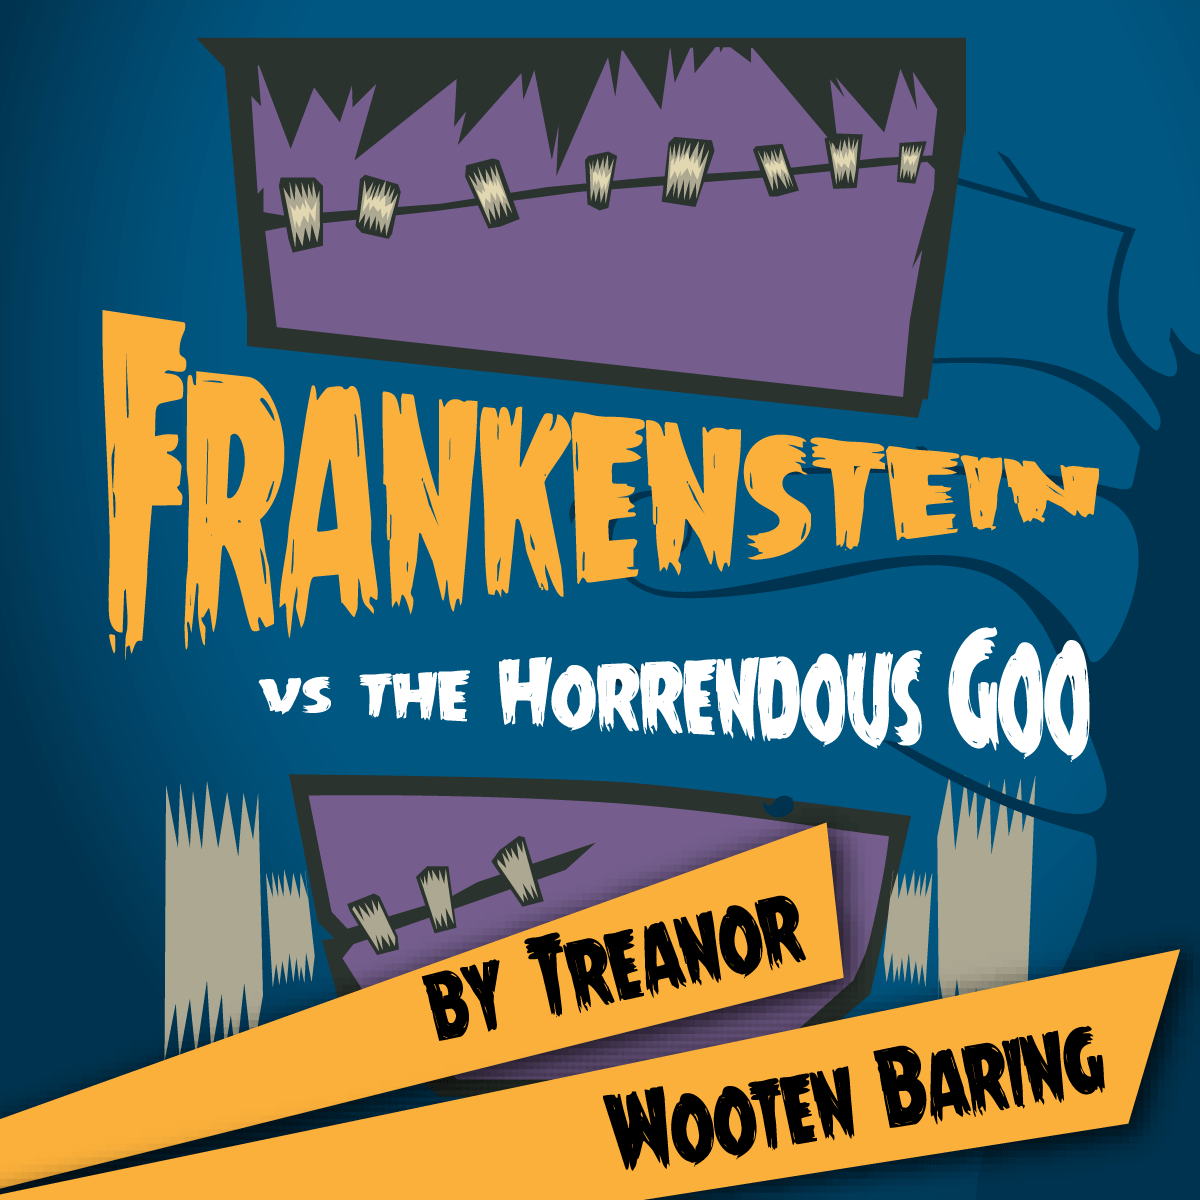 Frankenstein vs. the Horrendous Goo